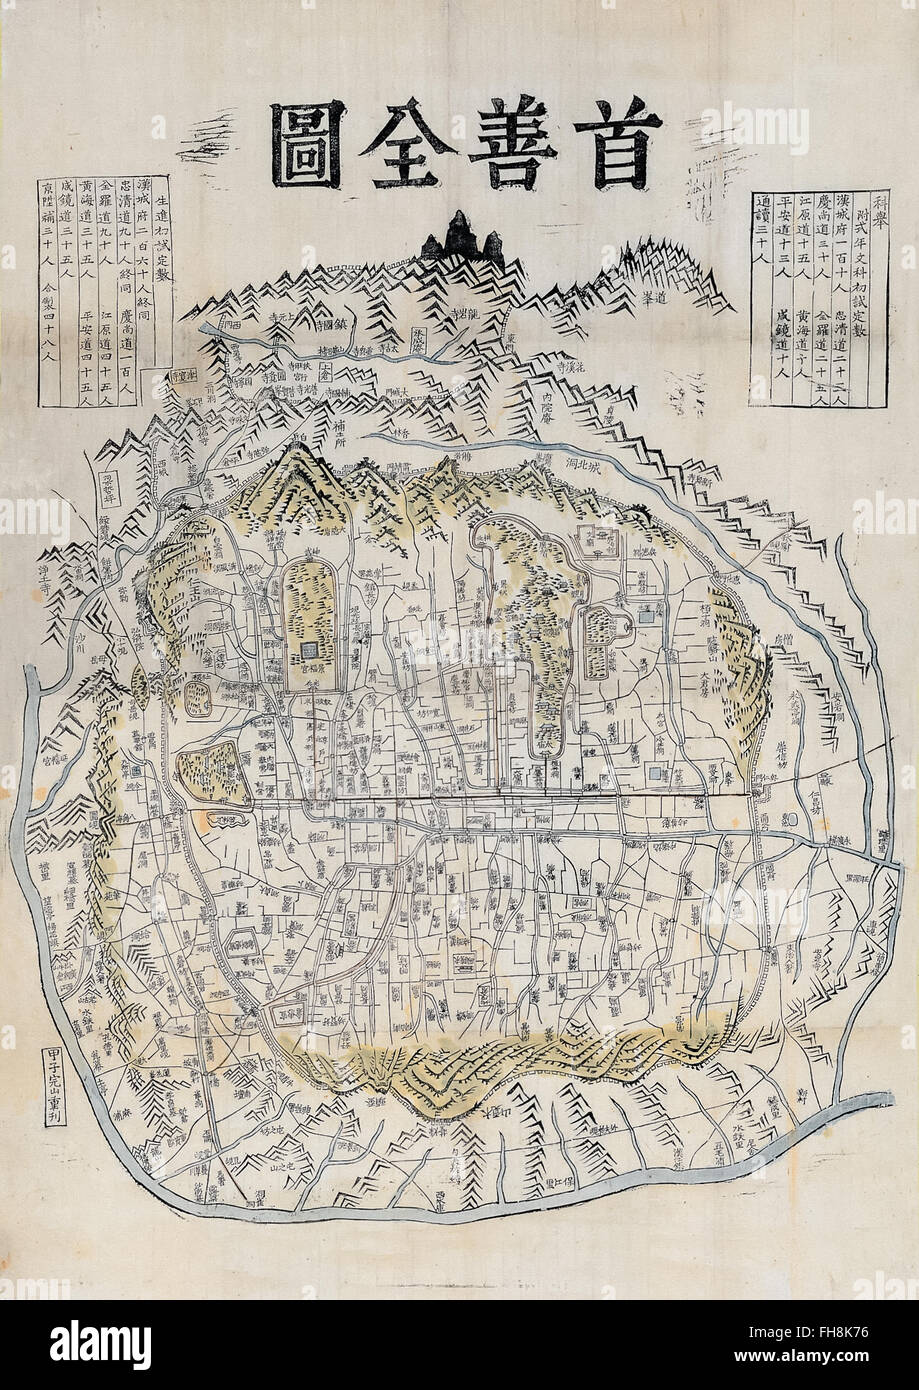 'Suseonjeondo' mappa di Seoul Corea da Kim Jeong-ho circa 1850 che mostra le mura della città. Fotografia della mappa originale nella collezione privata. Foto Stock